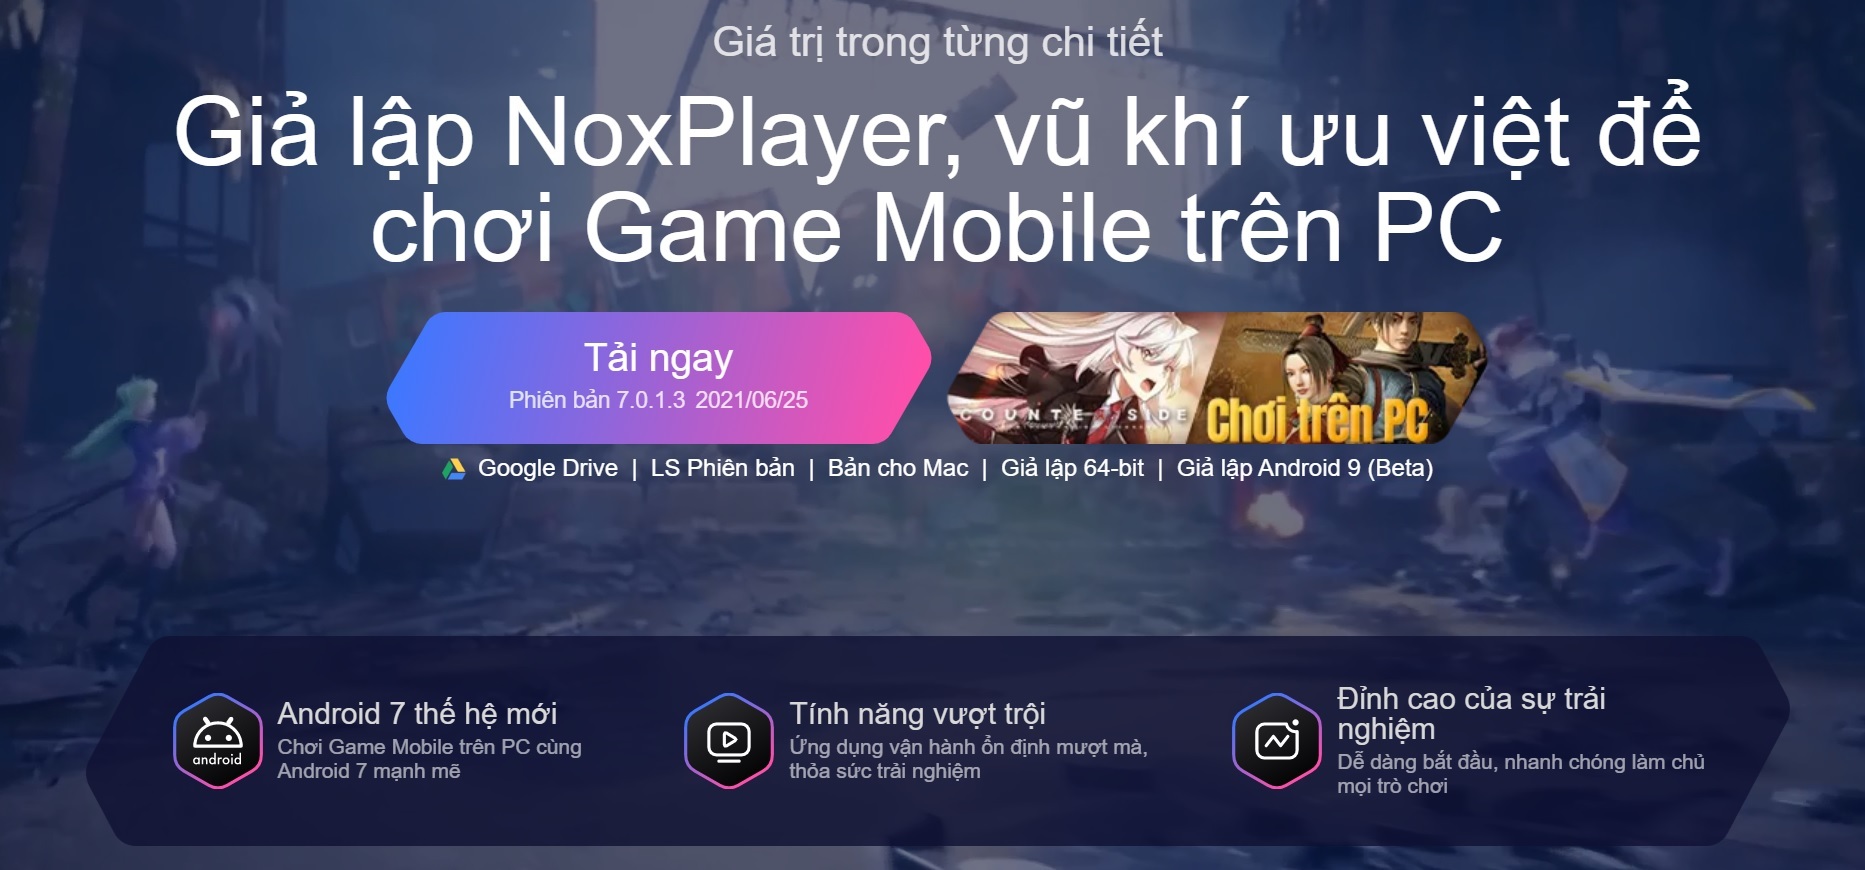 Cách tải và cài đặt phần mềm giả lập NoxPlayer | Nguyễn Kim Blog